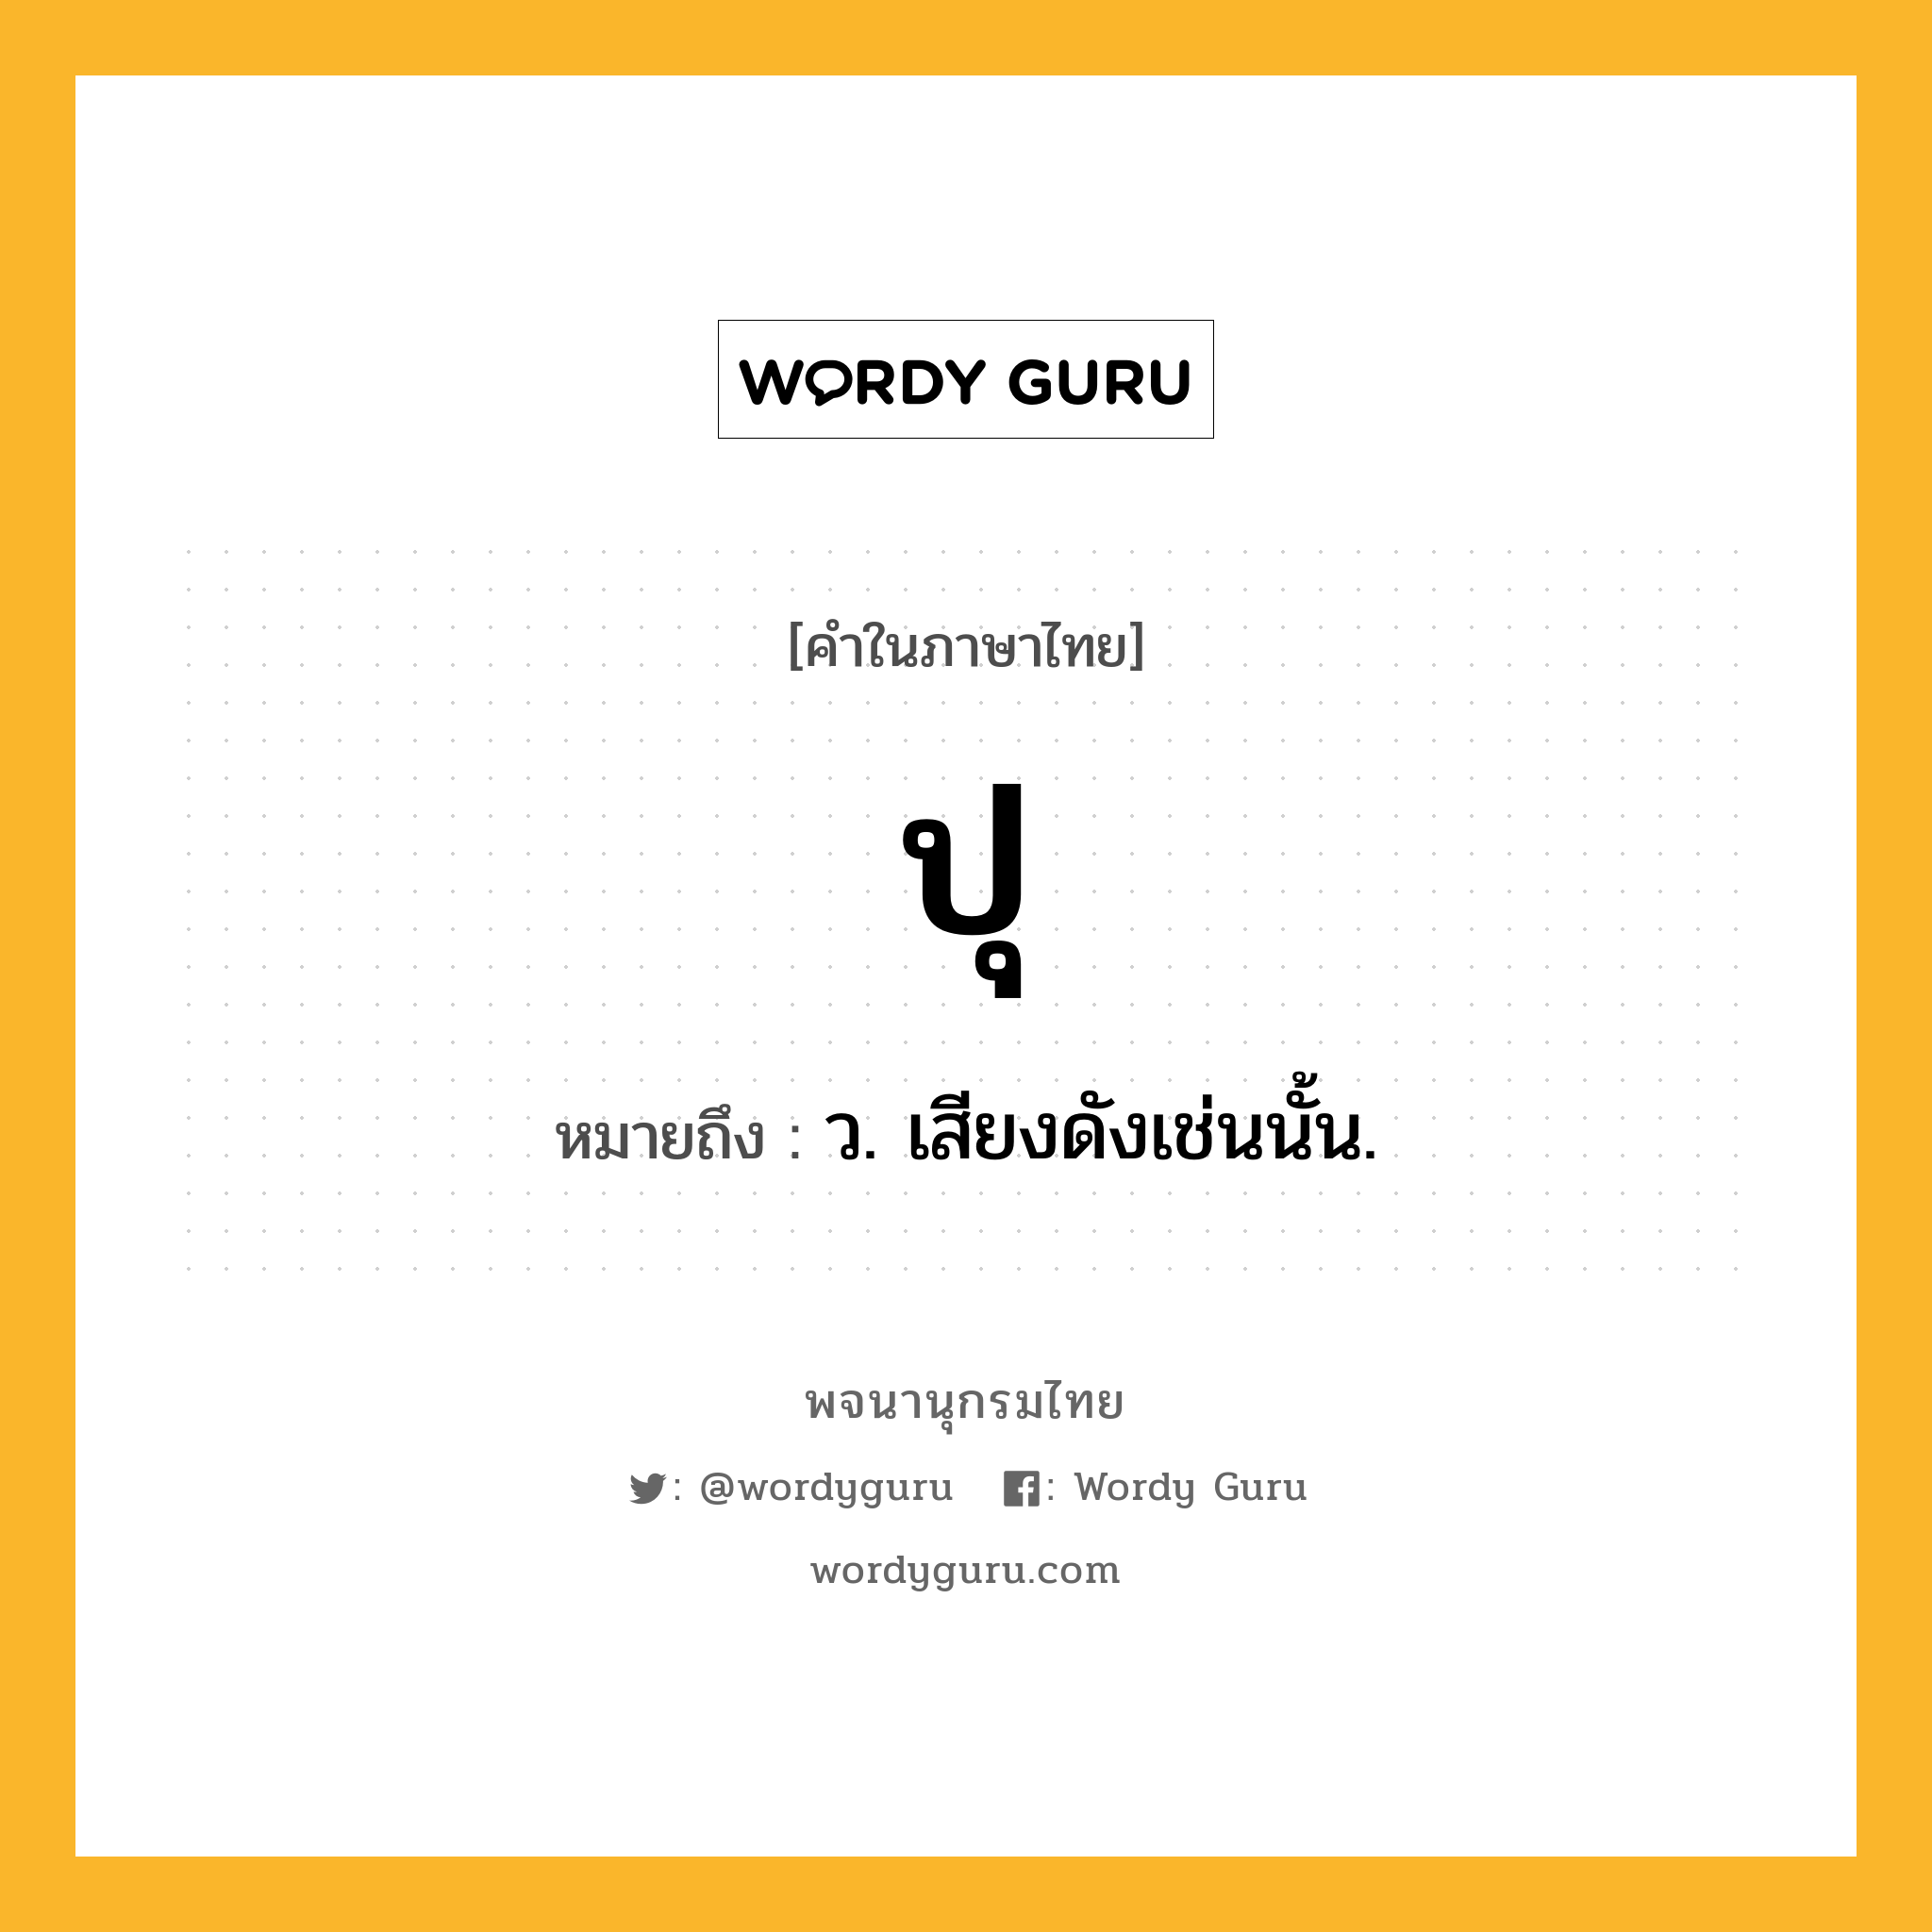 ปุ หมายถึงอะไร?, คำในภาษาไทย ปุ หมายถึง ว. เสียงดังเช่นนั้น.